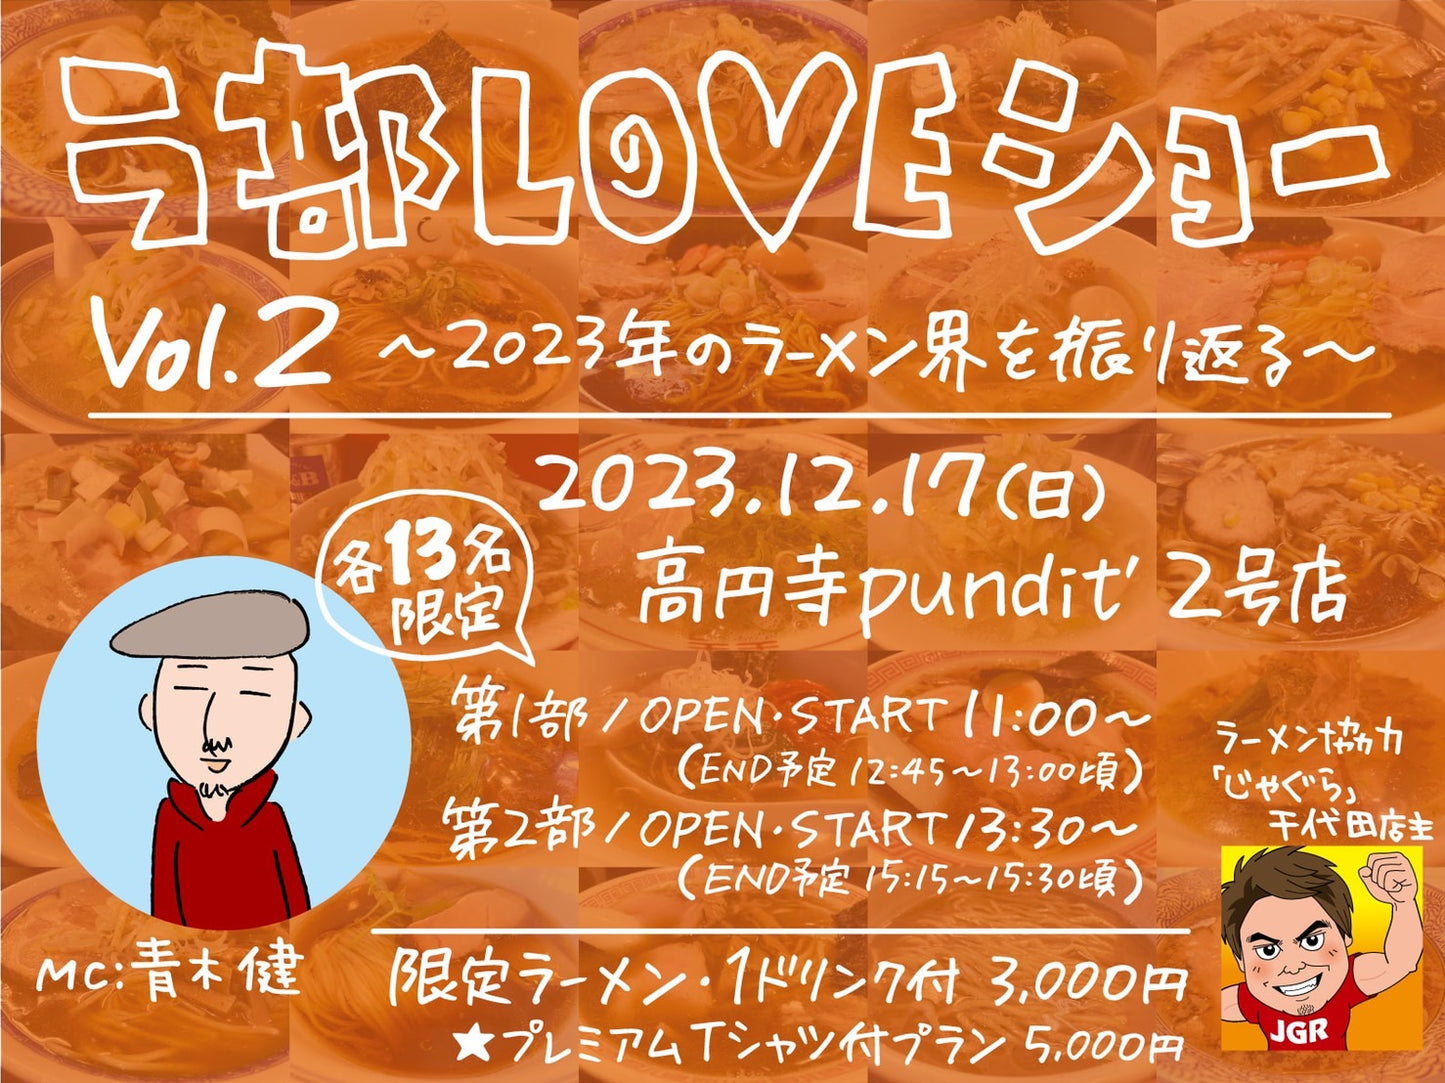 12月17日(日・昼) ラ部LOVEショー Vol.2 ~2023年のラーメン業界を振り返る~